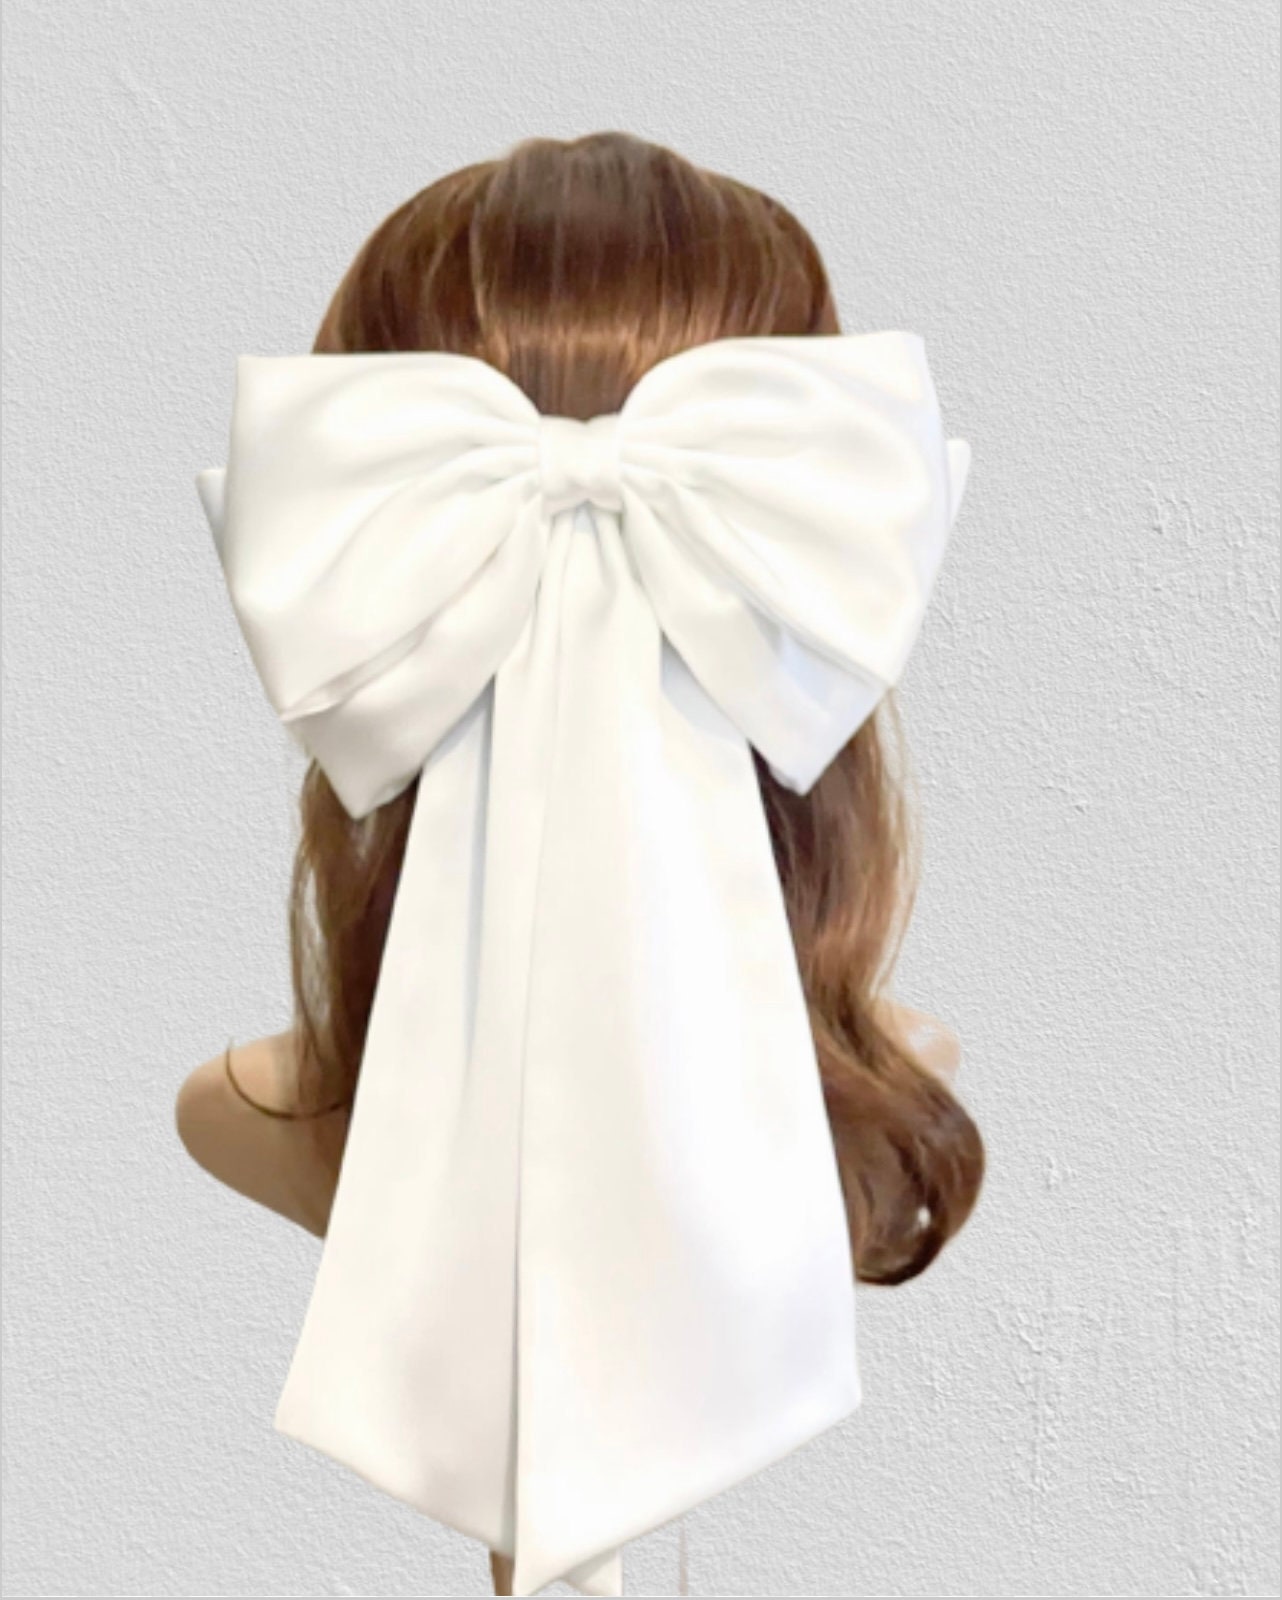 Silk Satin Bow , Hair Bow Women, White Bridal White Big Bow, 8 White Bow, Hair  Bow for Women, Hair Barrette Women, Hair Accessories 